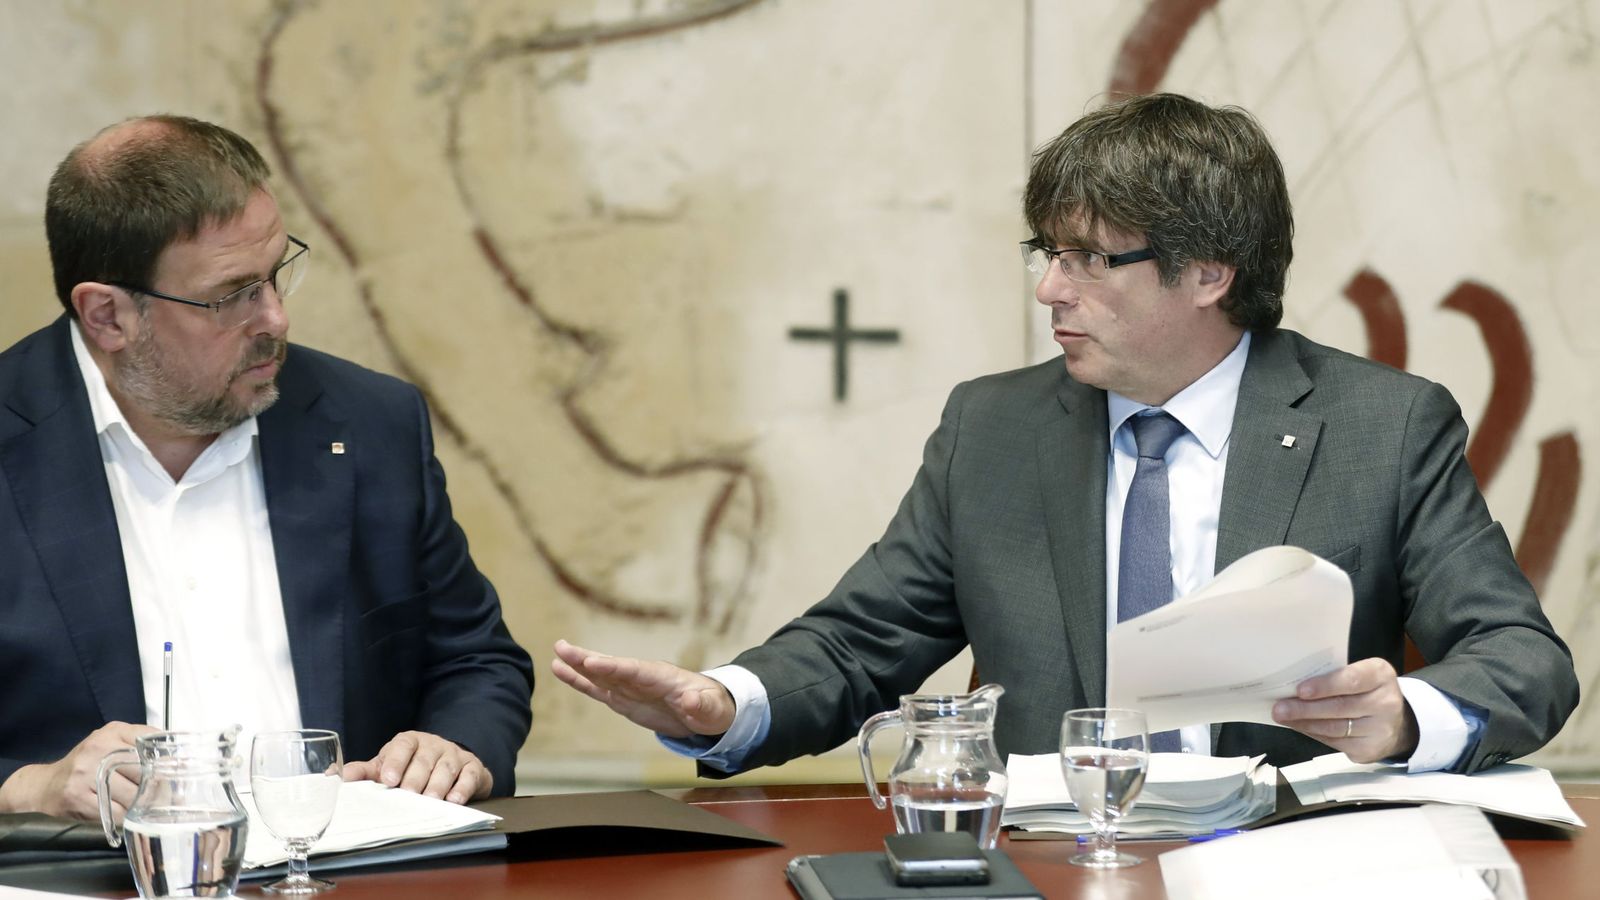 Foto: El presidente de la Generalitat, Carles Puigdemont, y el vicepresidente del Govern, Oriol Junqueras, en una imagen de archivo. (Efe) 